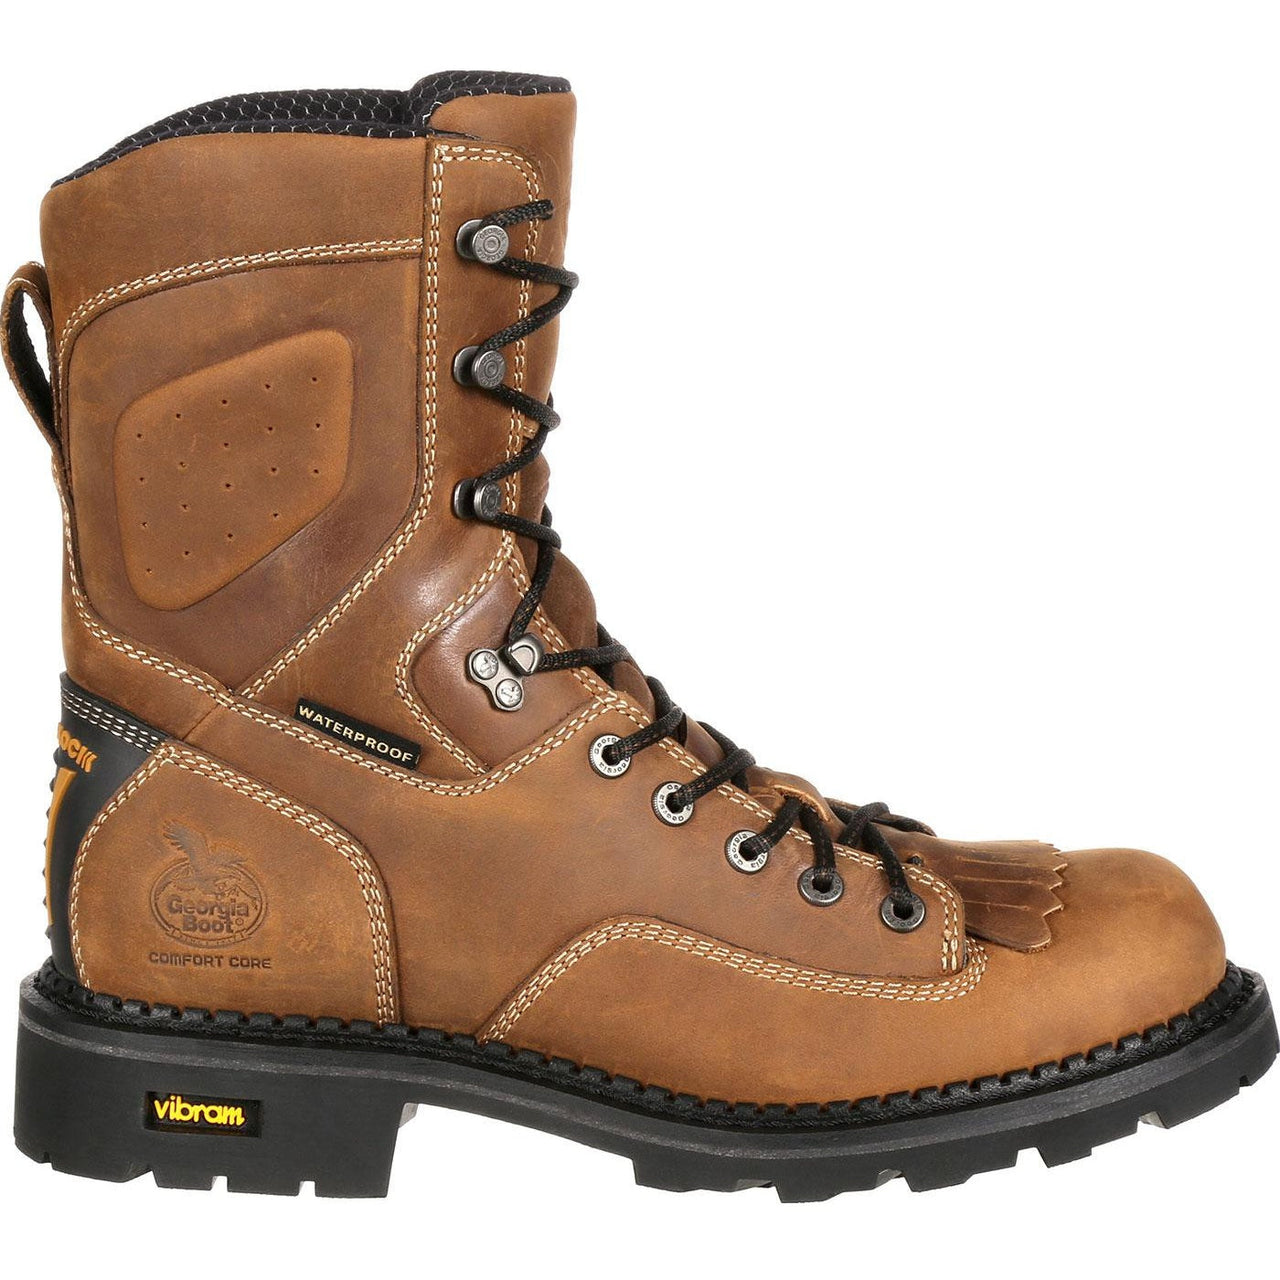 Men's Georgia Boots Comfort Core Composite Toe Waterproof Logger Work Boots Brown - yeehawcowboy